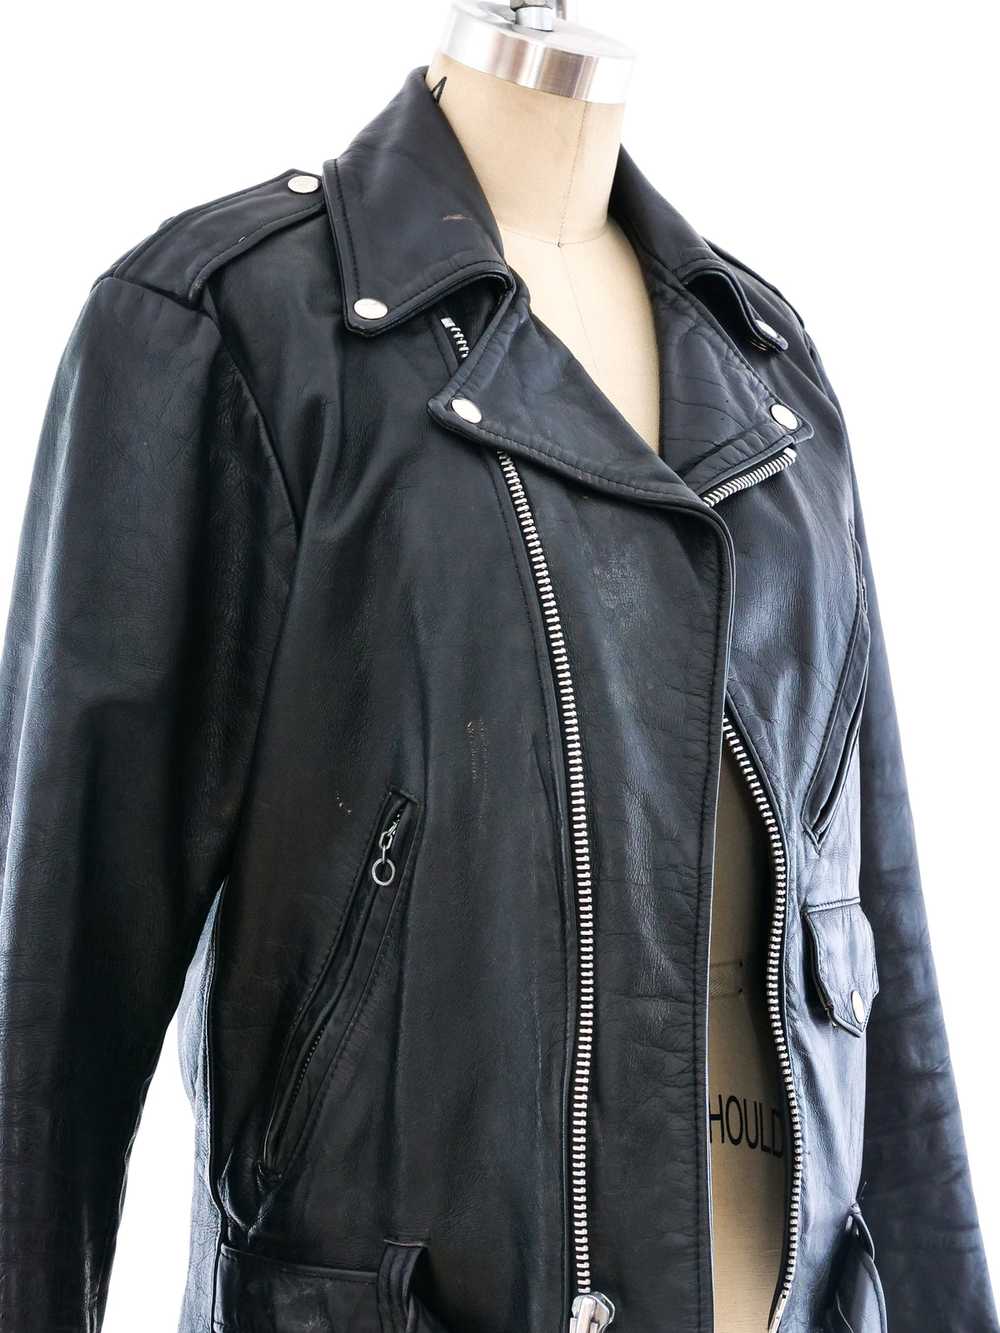 Leather Motorcycle Jacket - image 5